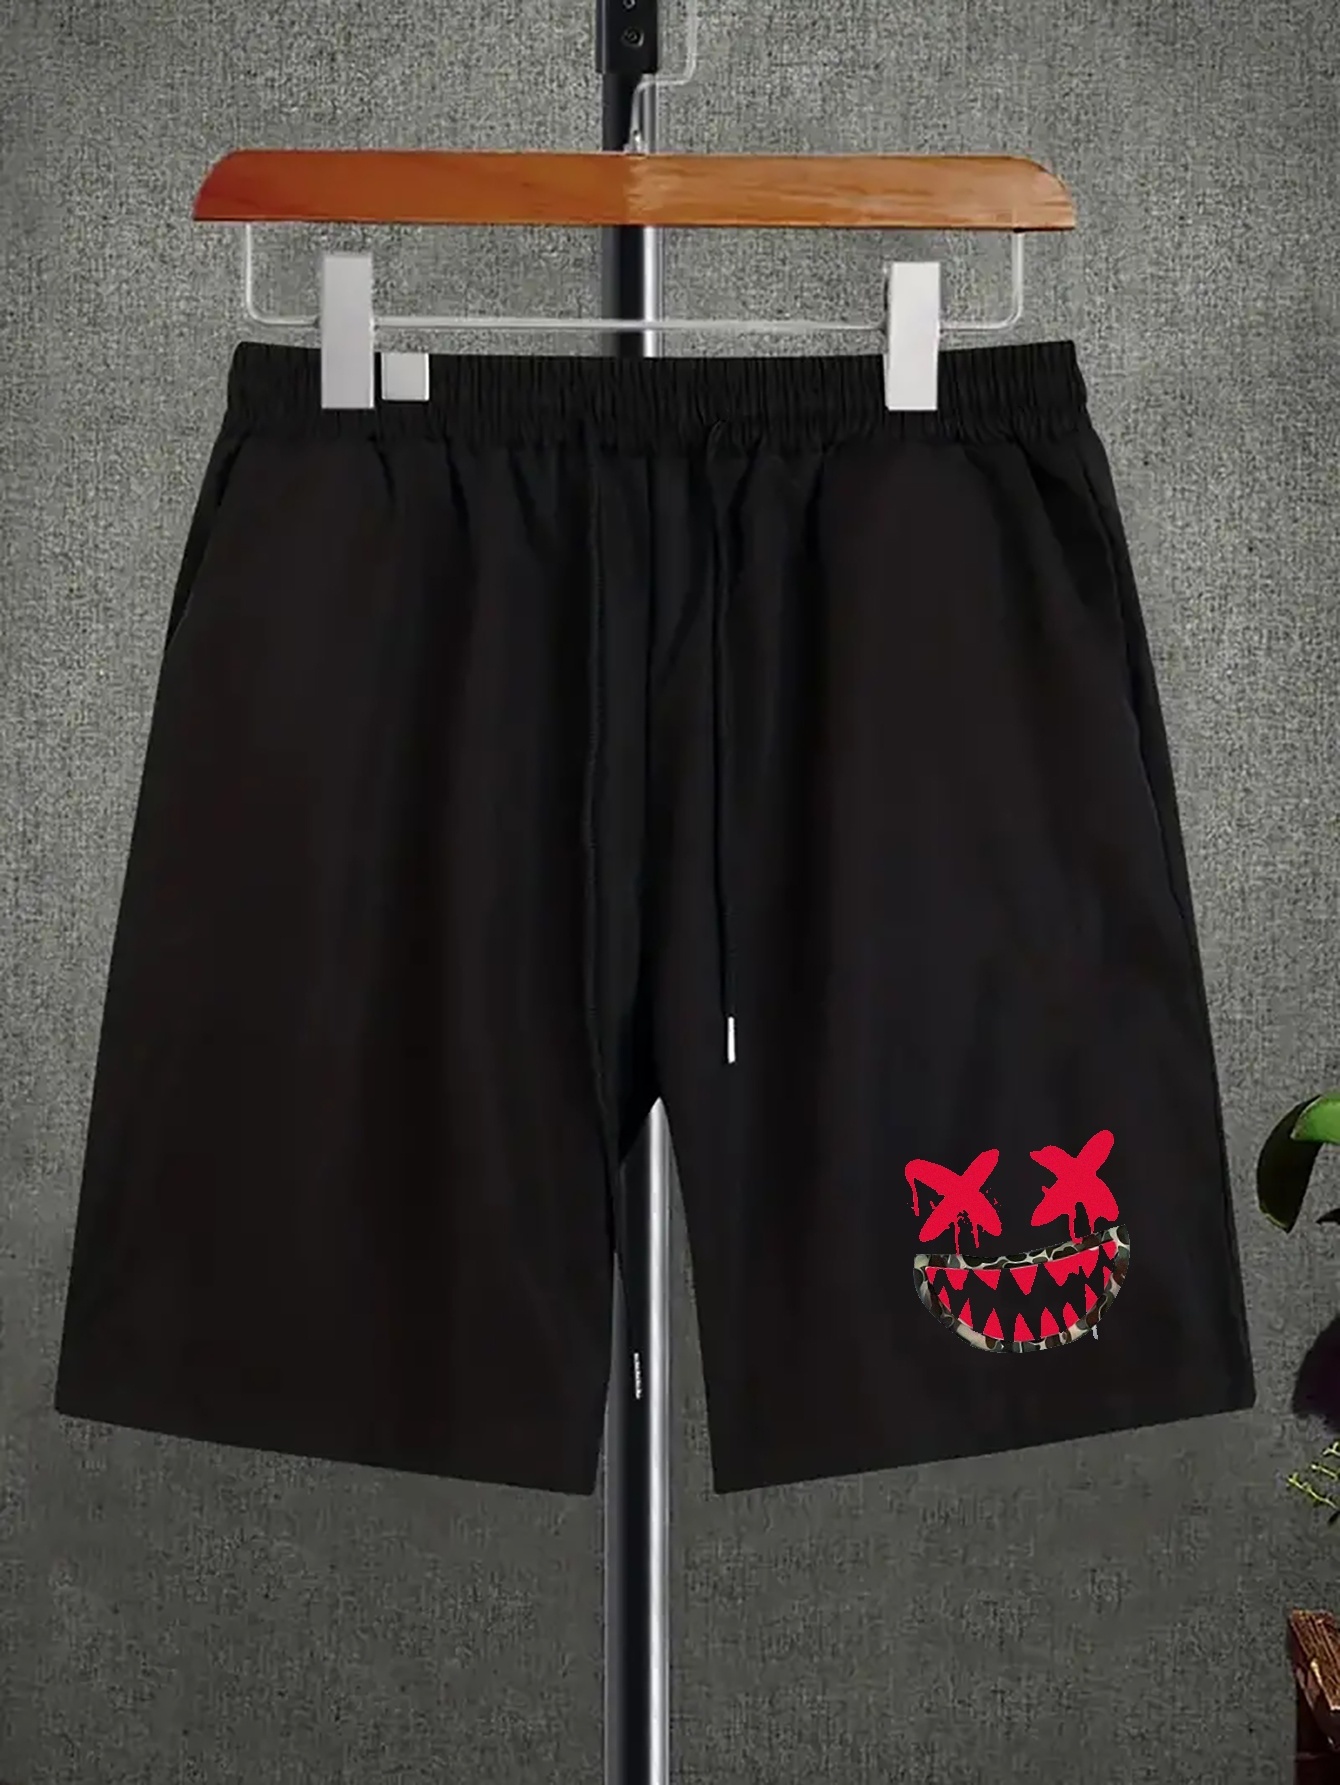 Redbat Classics Men's Black Shorts Prices, Shop Deals Online